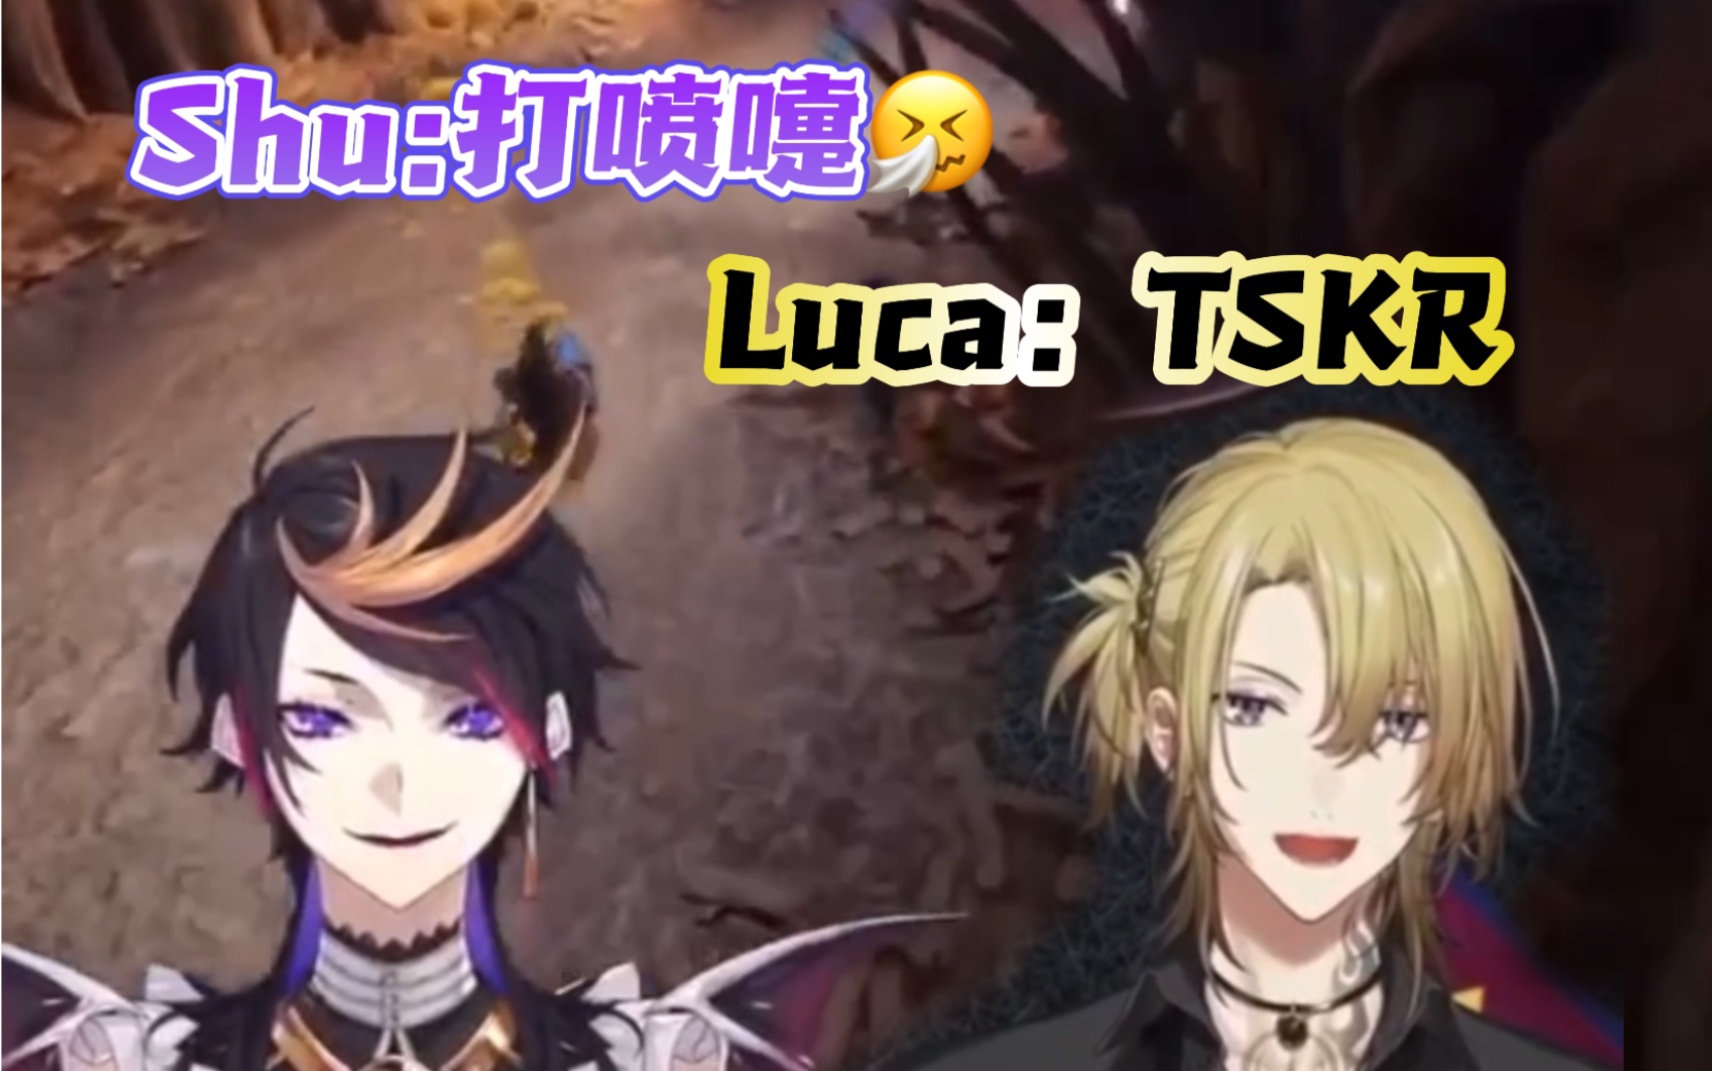 【Lucashu/狮鞋】对Shu的喷嚏TSKR的Luca